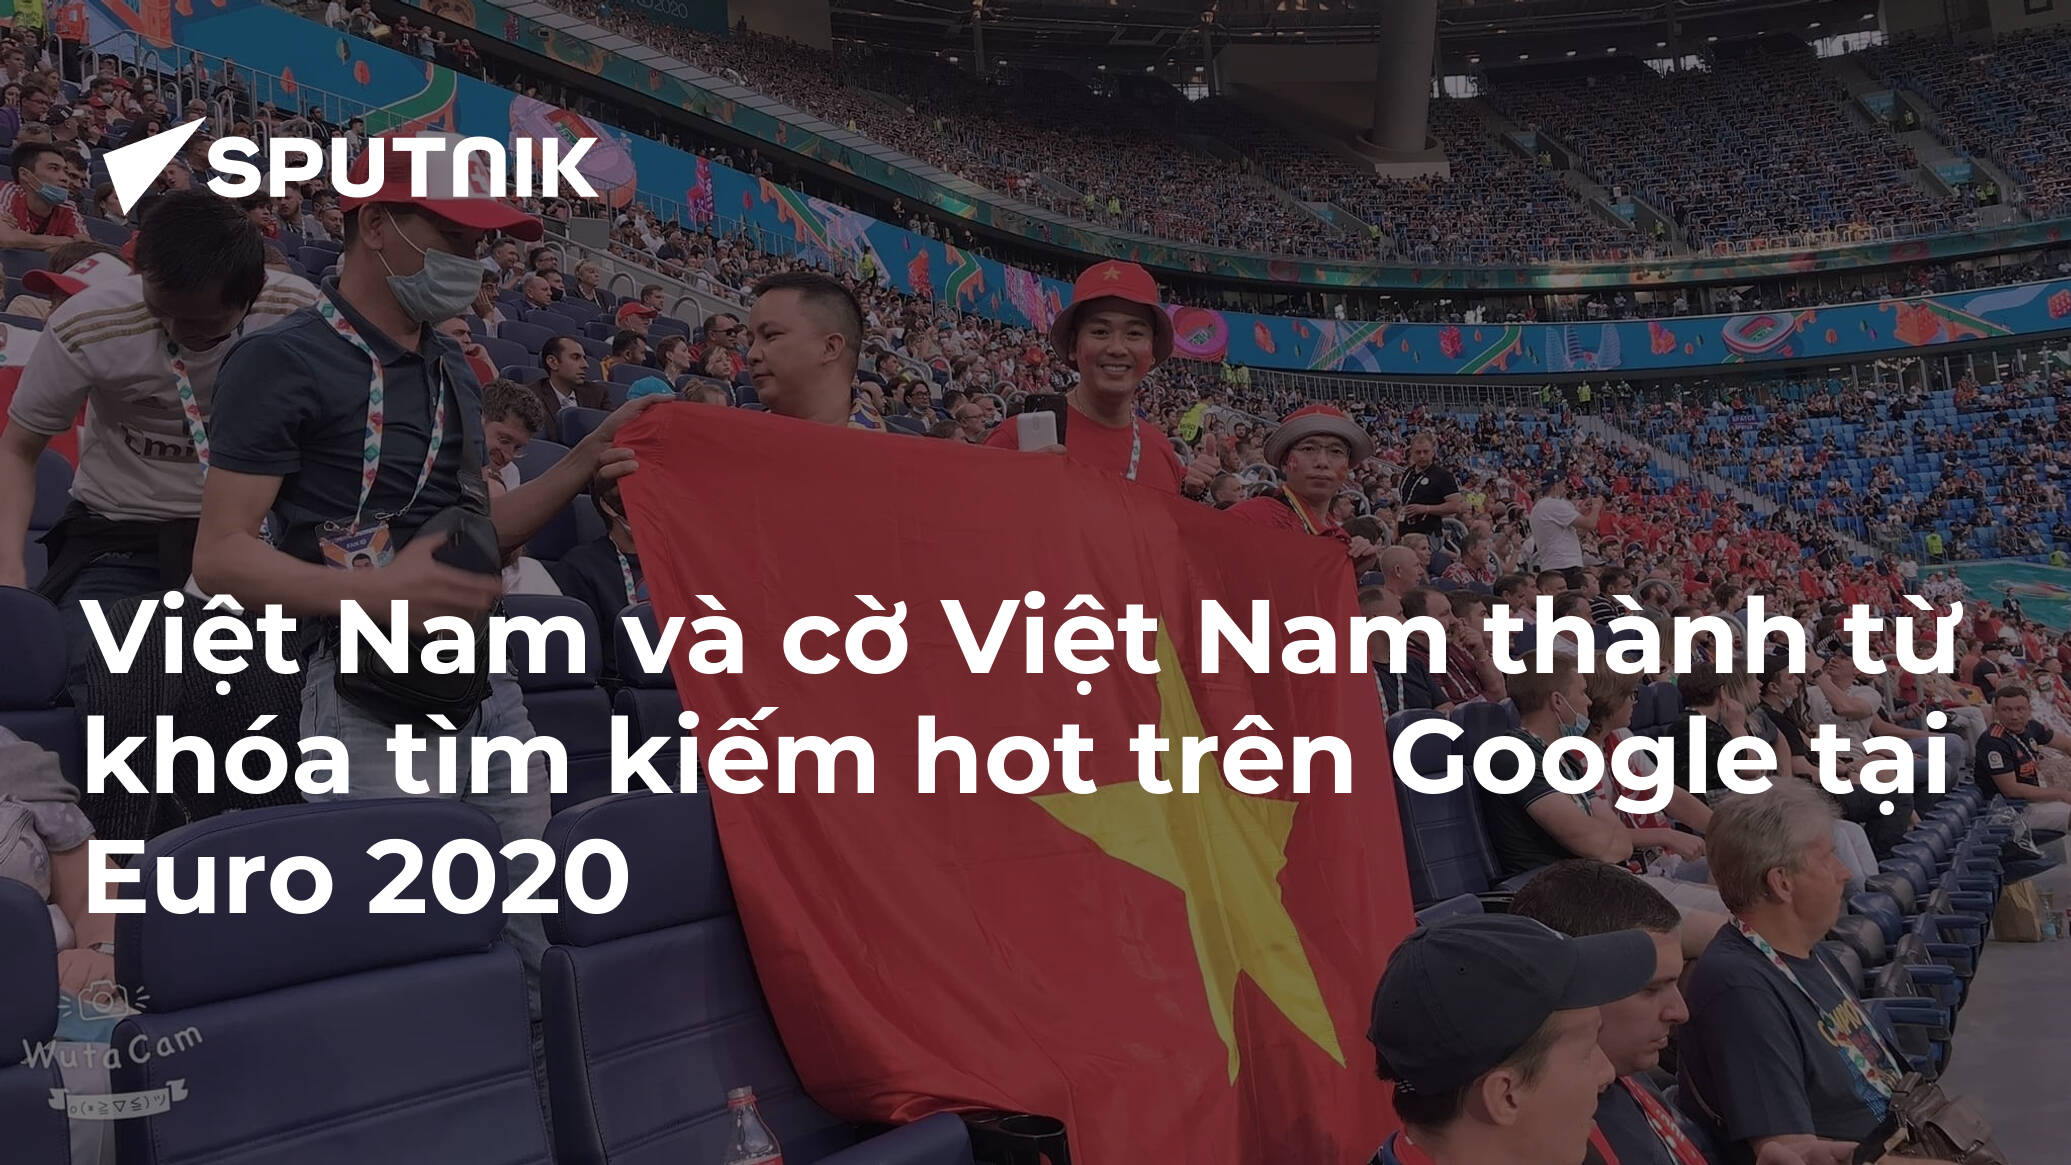 Từ khóa tìm kiếm cờ Việt Nam tại...: Dù bạn ở đâu trên thế giới, chỉ cần nhập từ khóa tìm kiếm \